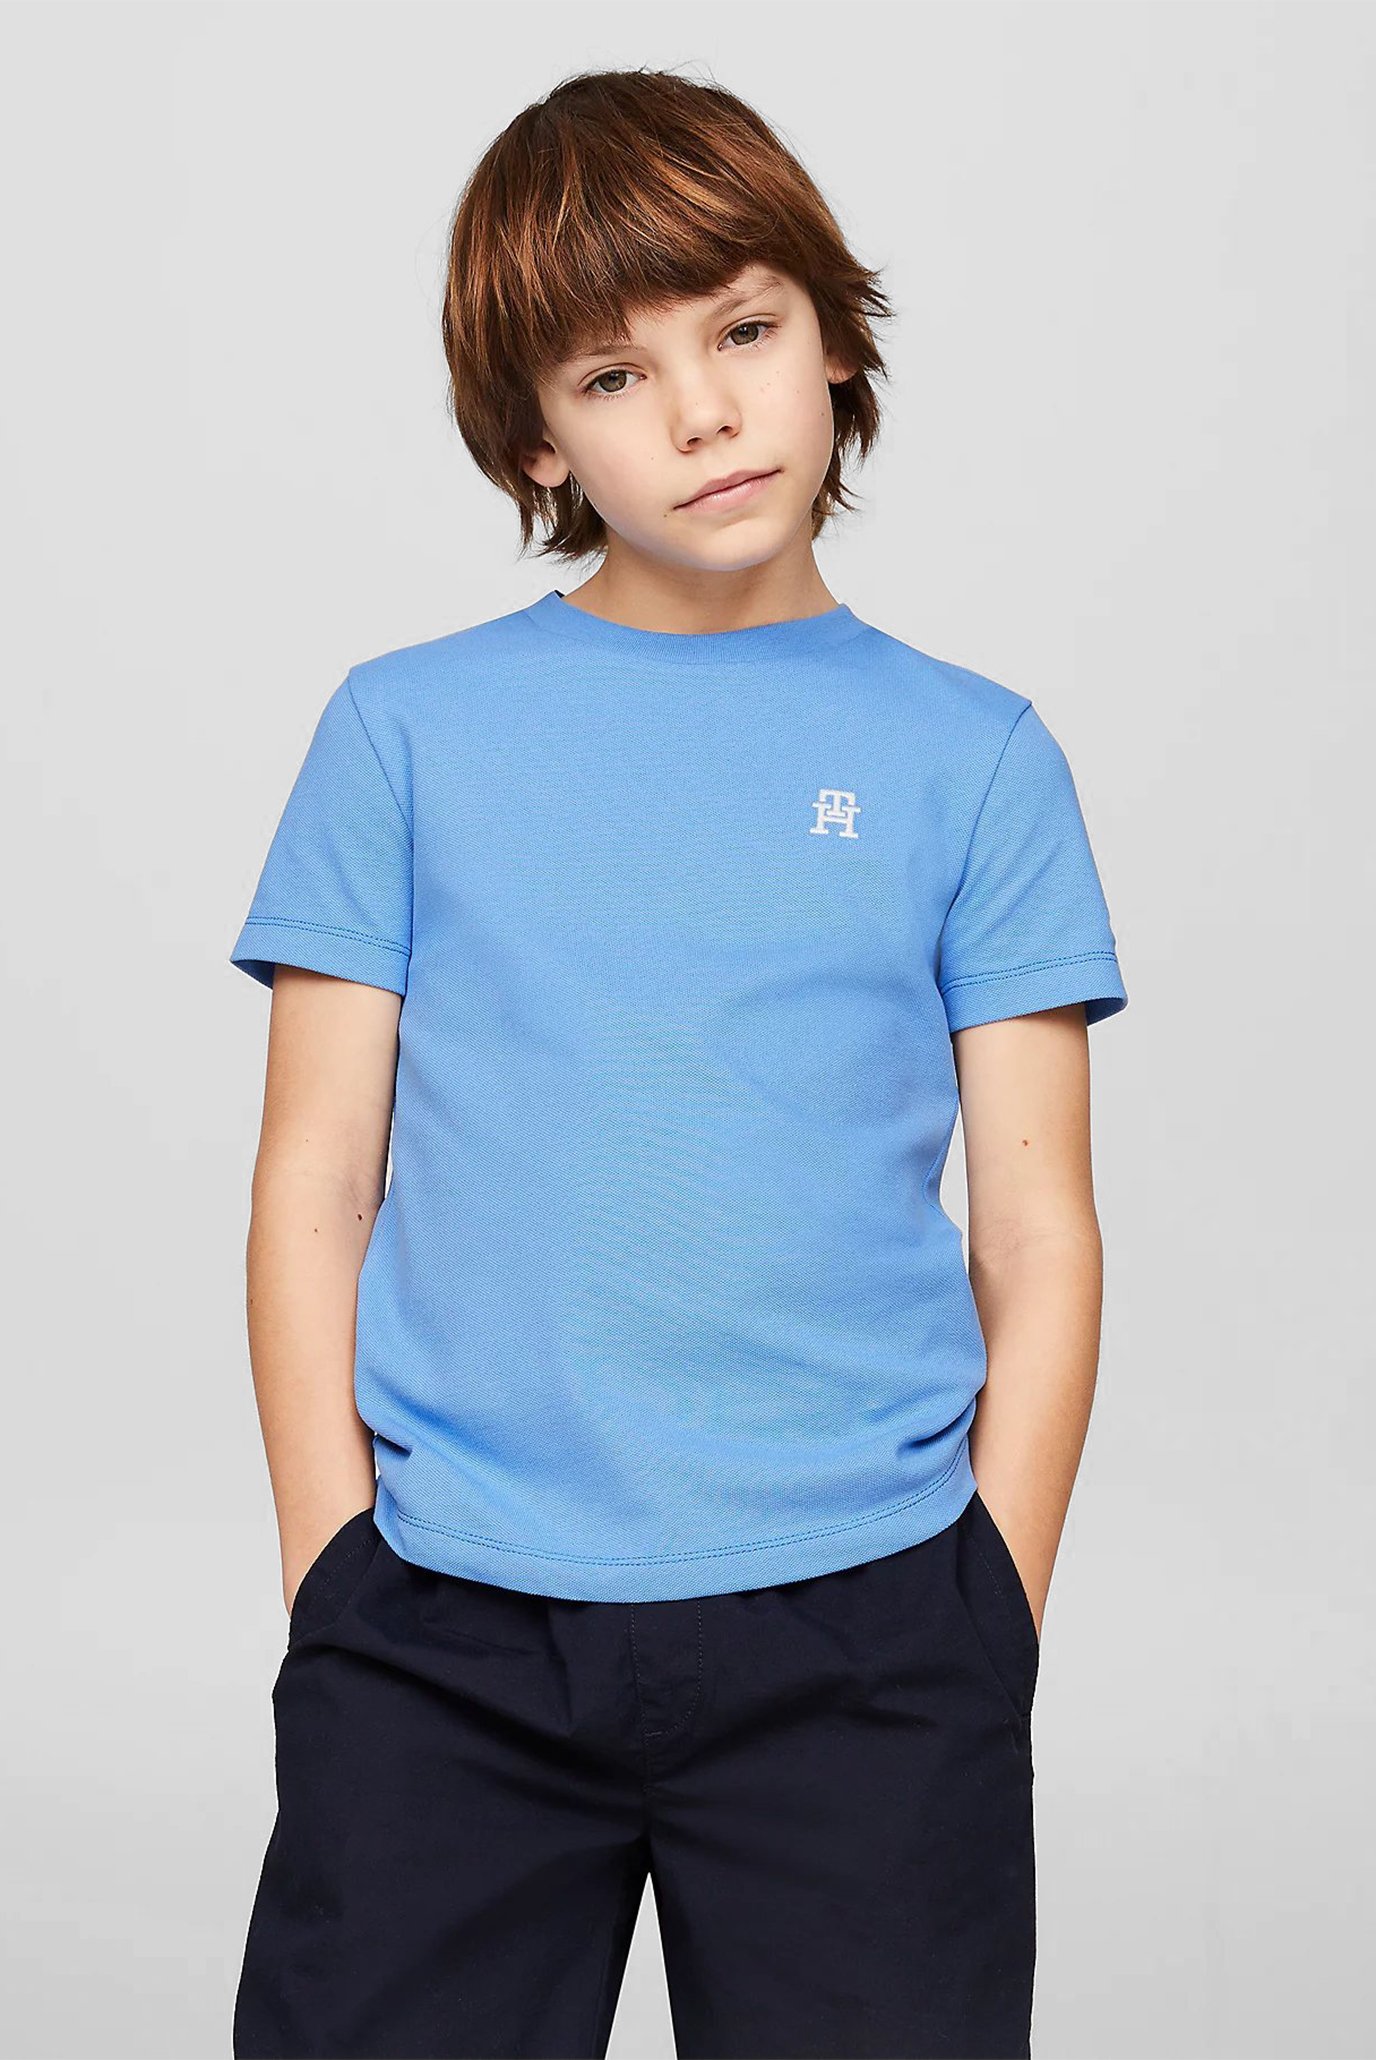 Детская голубая футболка PIQUE MONOGRAM TEE S/S 1